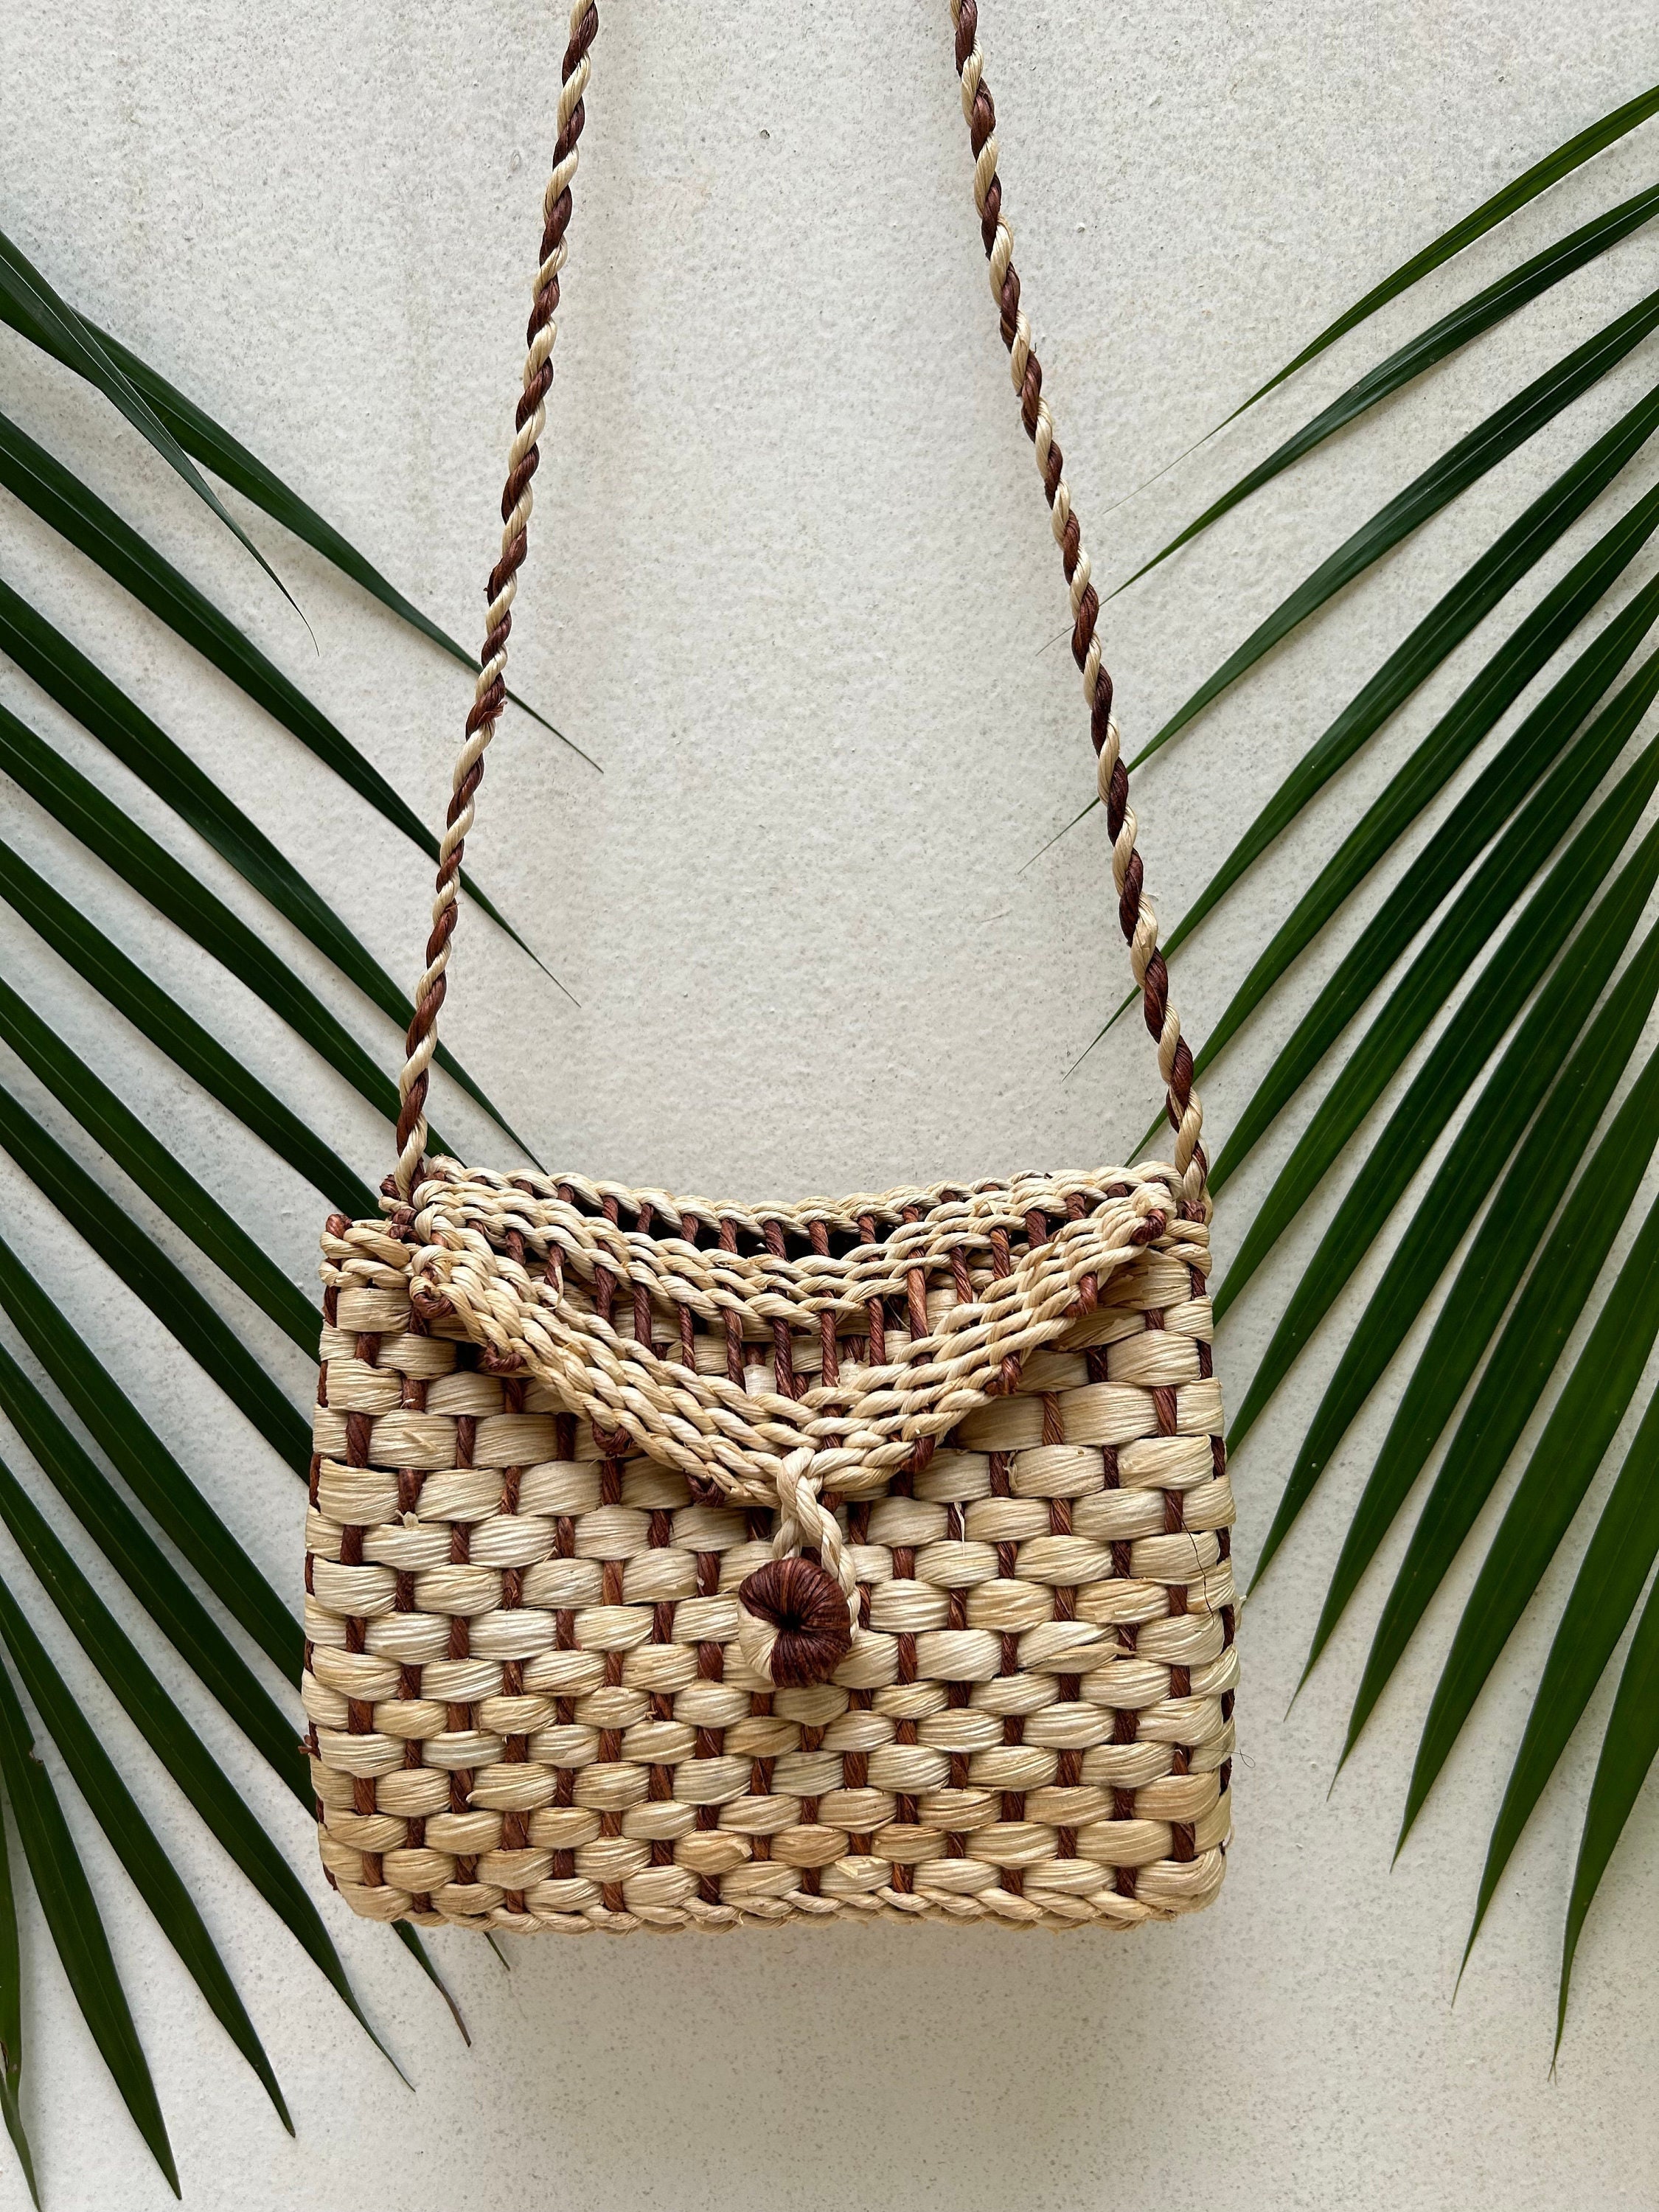 Dicasser Straw Bags For Women Summer Beach Straw Bags With Tassel Mini Straw  Handbags With Zipper Weave Handmade Crossbody Bag Bohemian Shoulder Purse  2PCS 